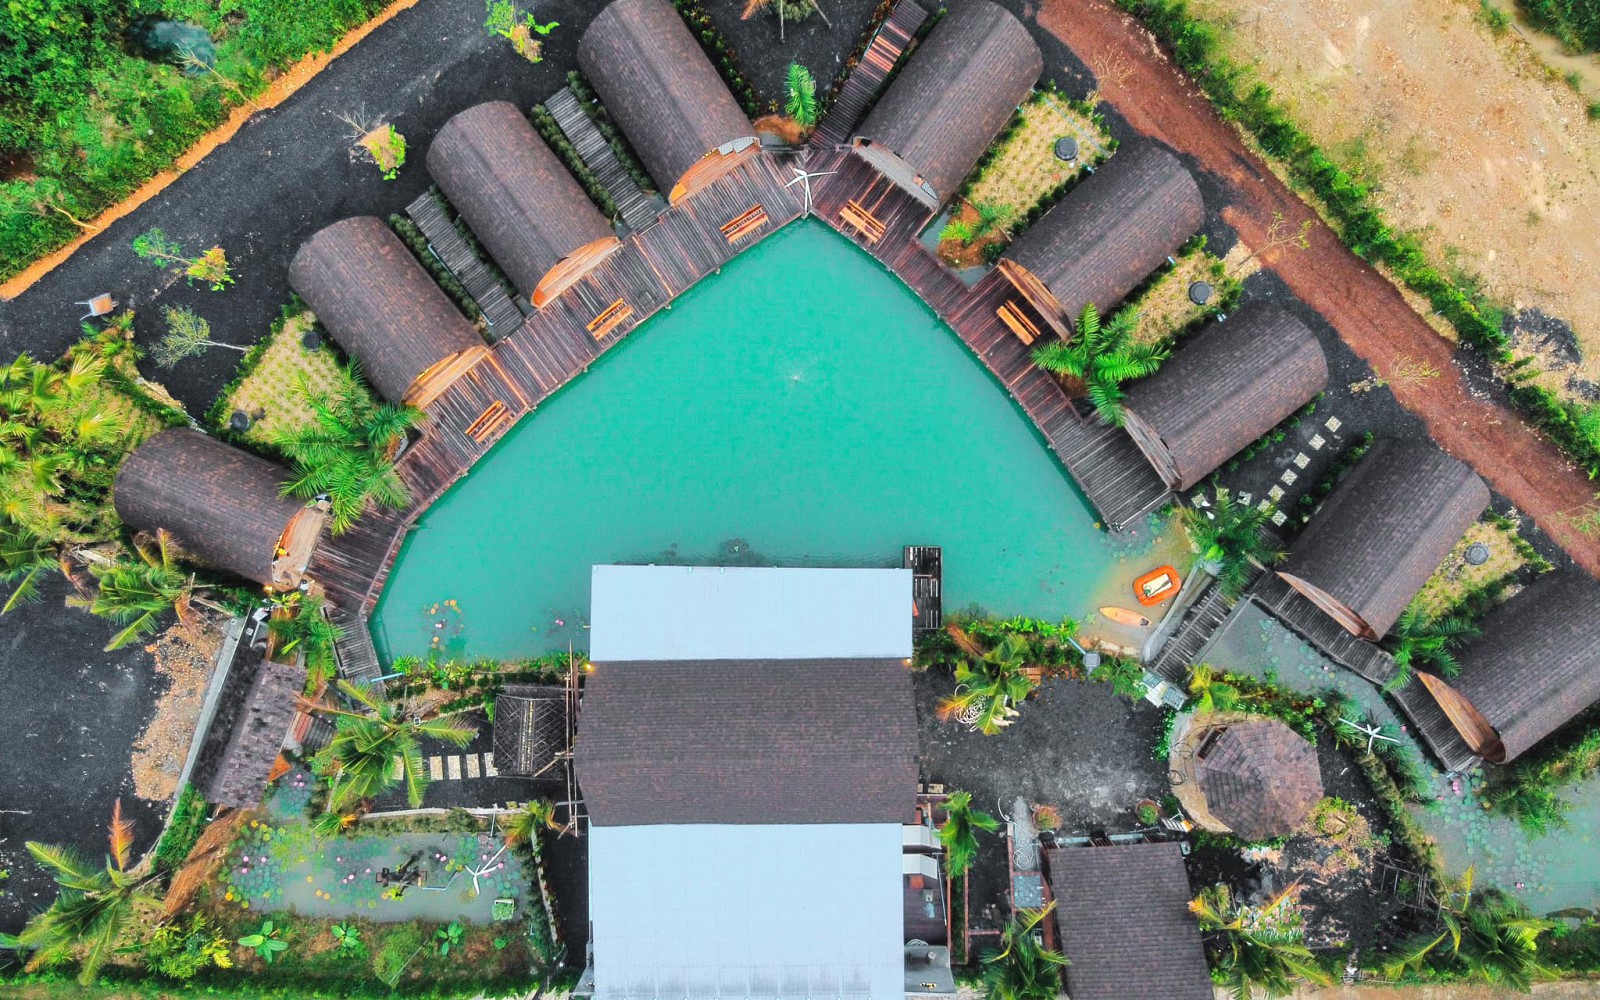 Plaiphu Pool Villas